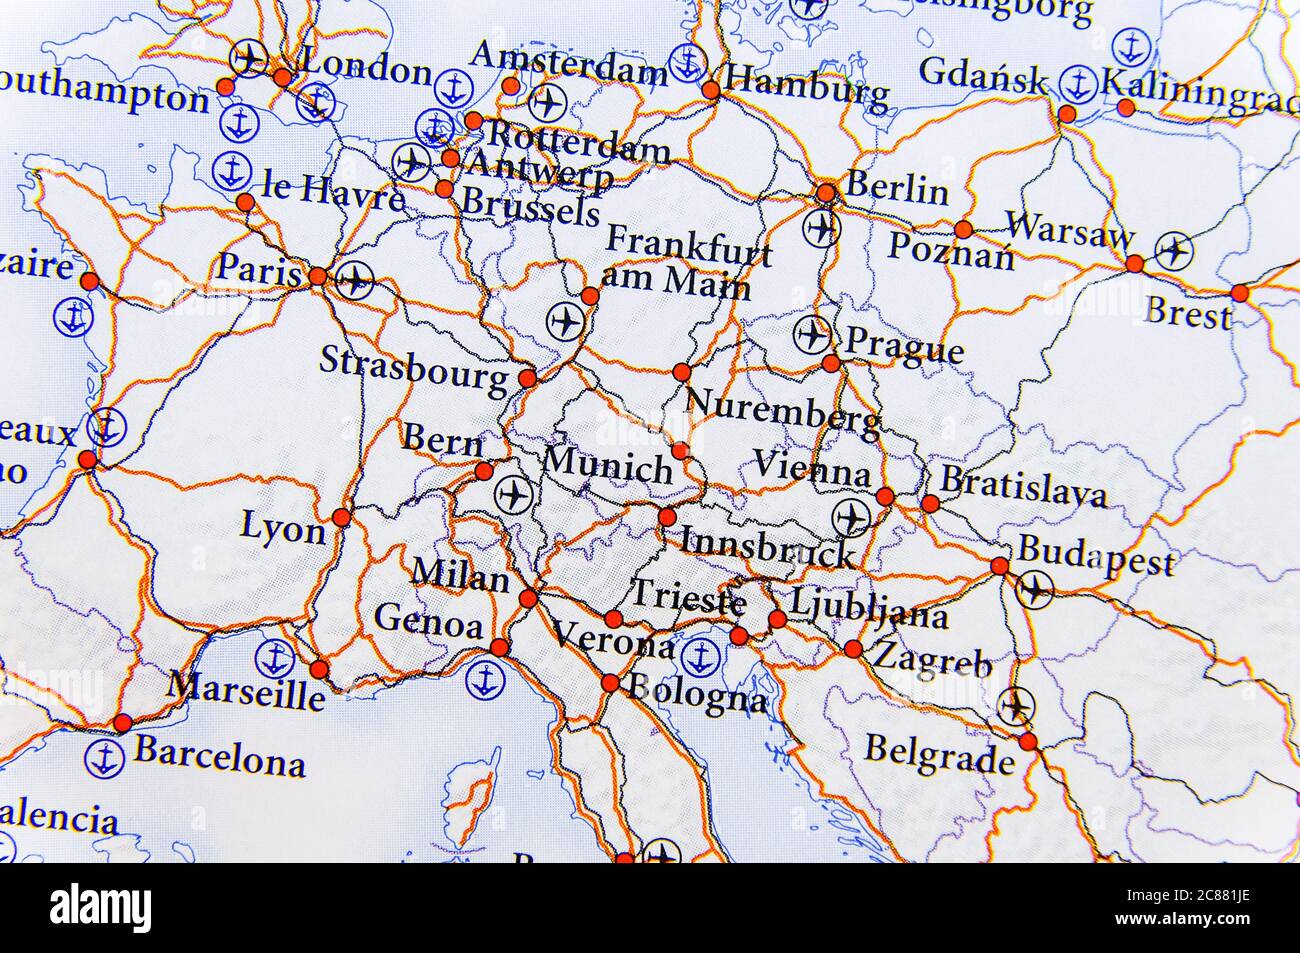 Mappa geografica dei paesi europei con autostrada a due passi Foto Stock